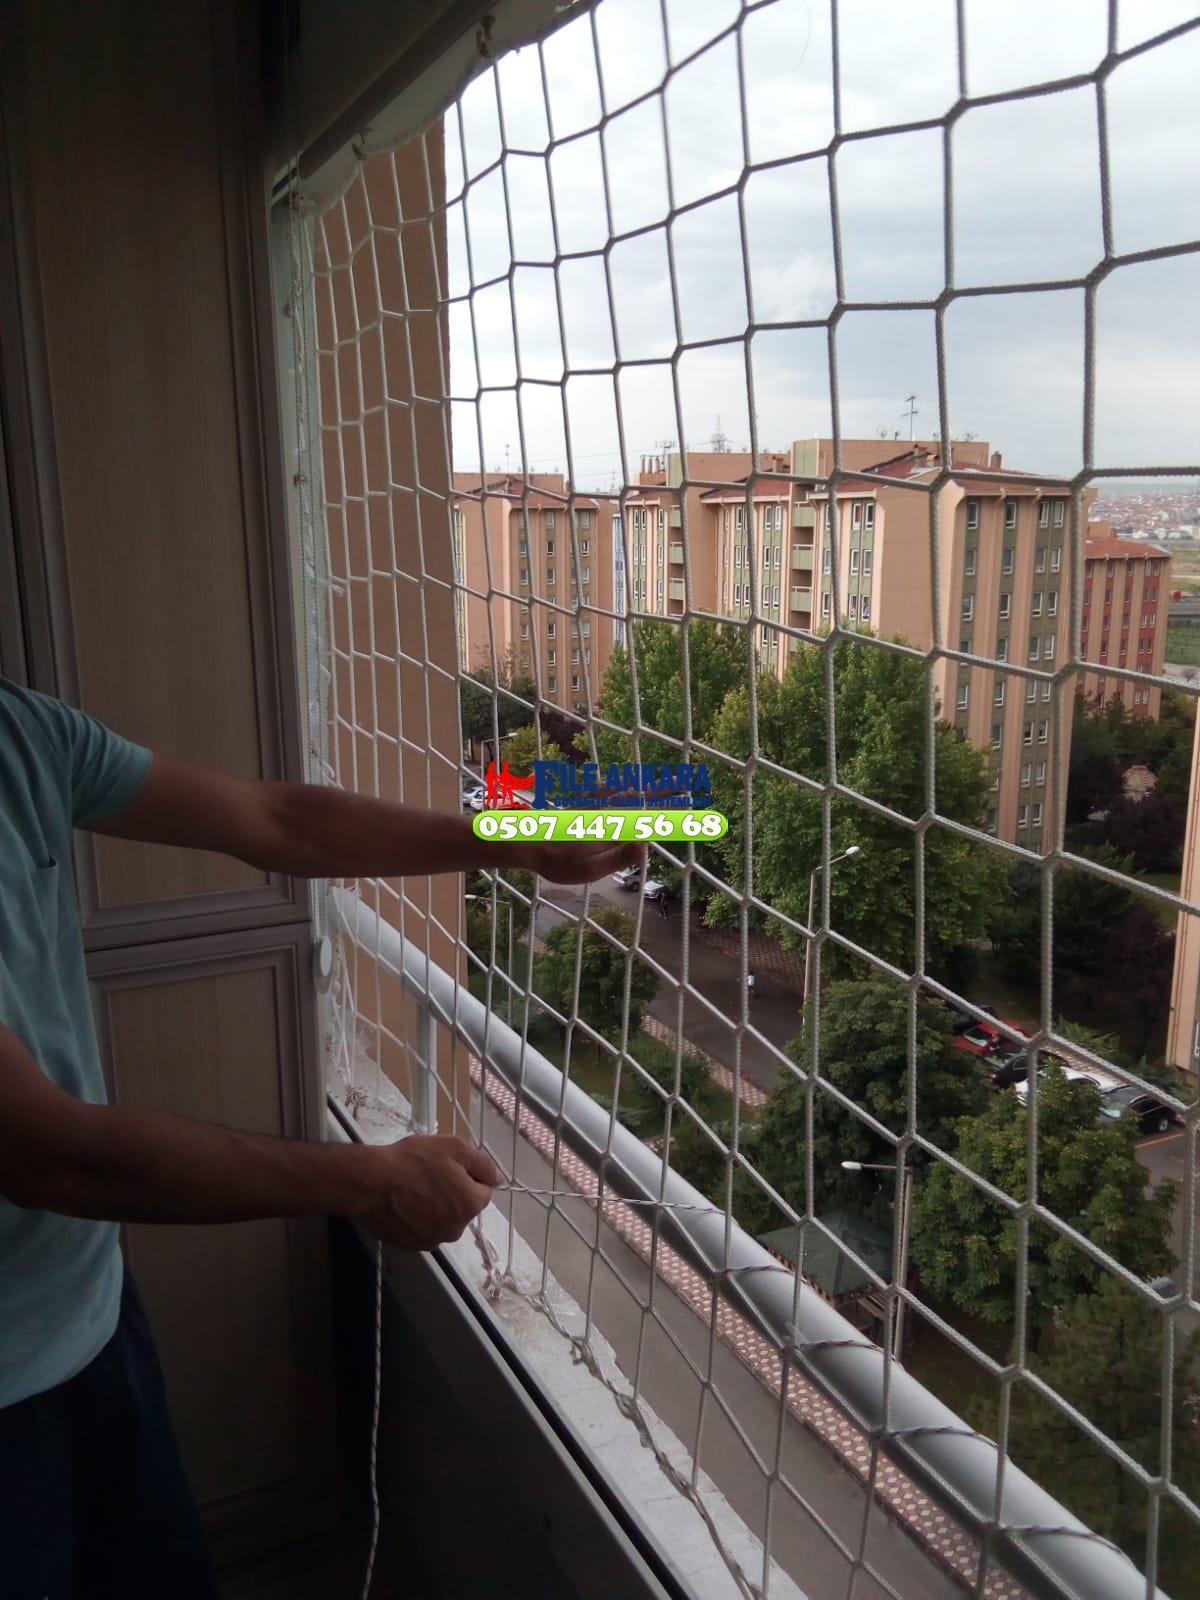 Kırşehir  Balkon  koruma filesi - Merdiven filesi - En ucuz balkon güvenlik filesi satış ve montajı 0507 447 56 68